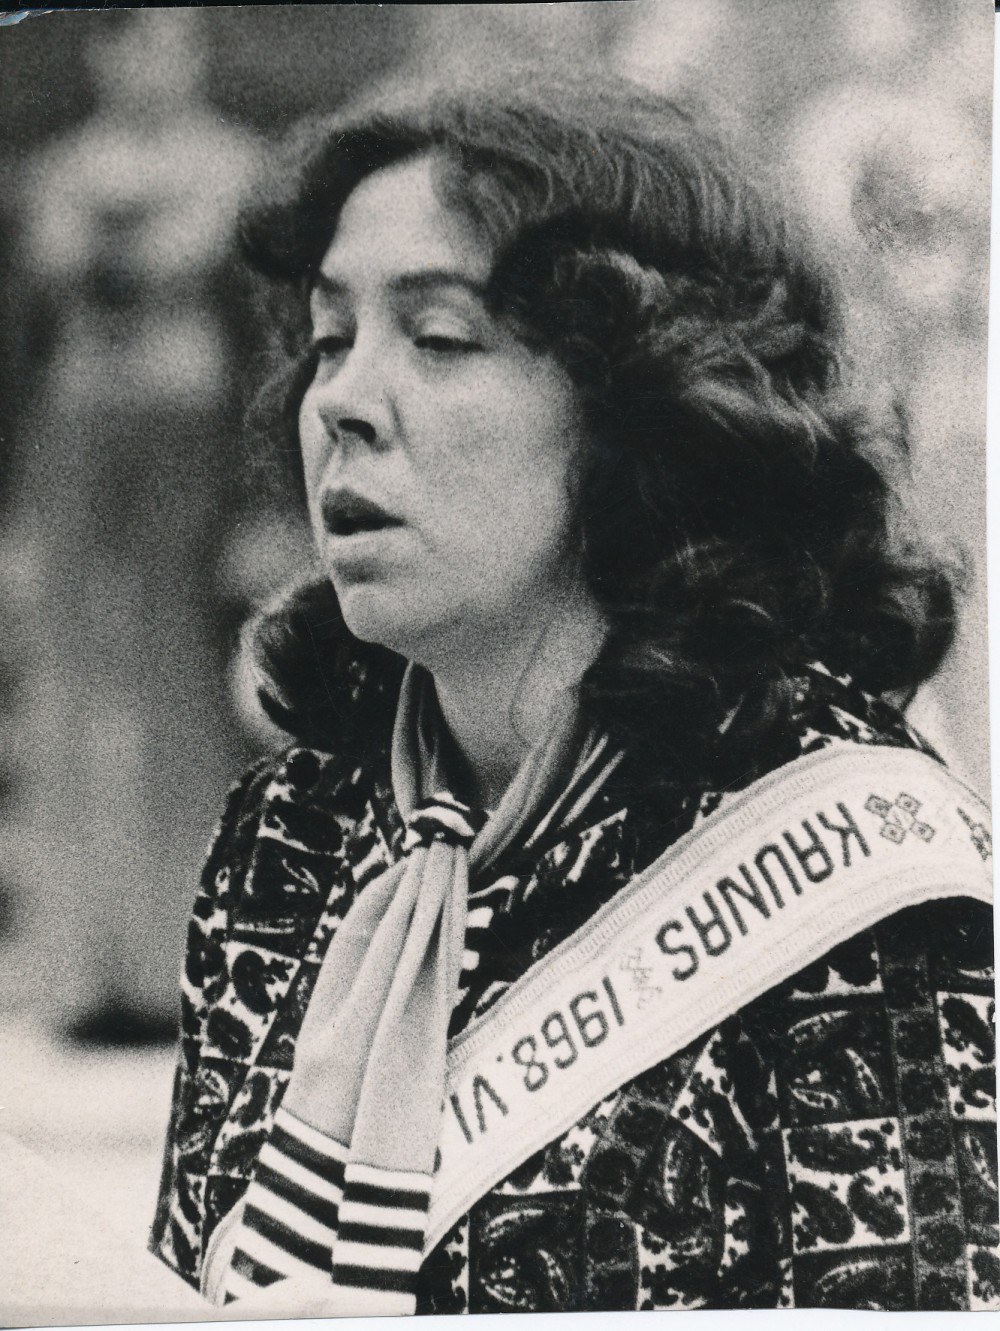 1968-ųjų Poezijos pavasario laureatė Janina Degutytė Kaune. Ketvirtąja Poezijos pavasario laureate J. Degutytė tapo už eilėraščių rinkinį „Pilnatis“, išėjusį 1967 m.